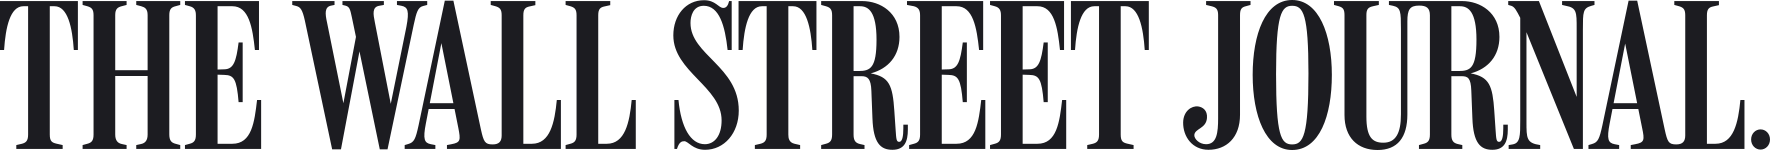 The Wall Street Journal Logo